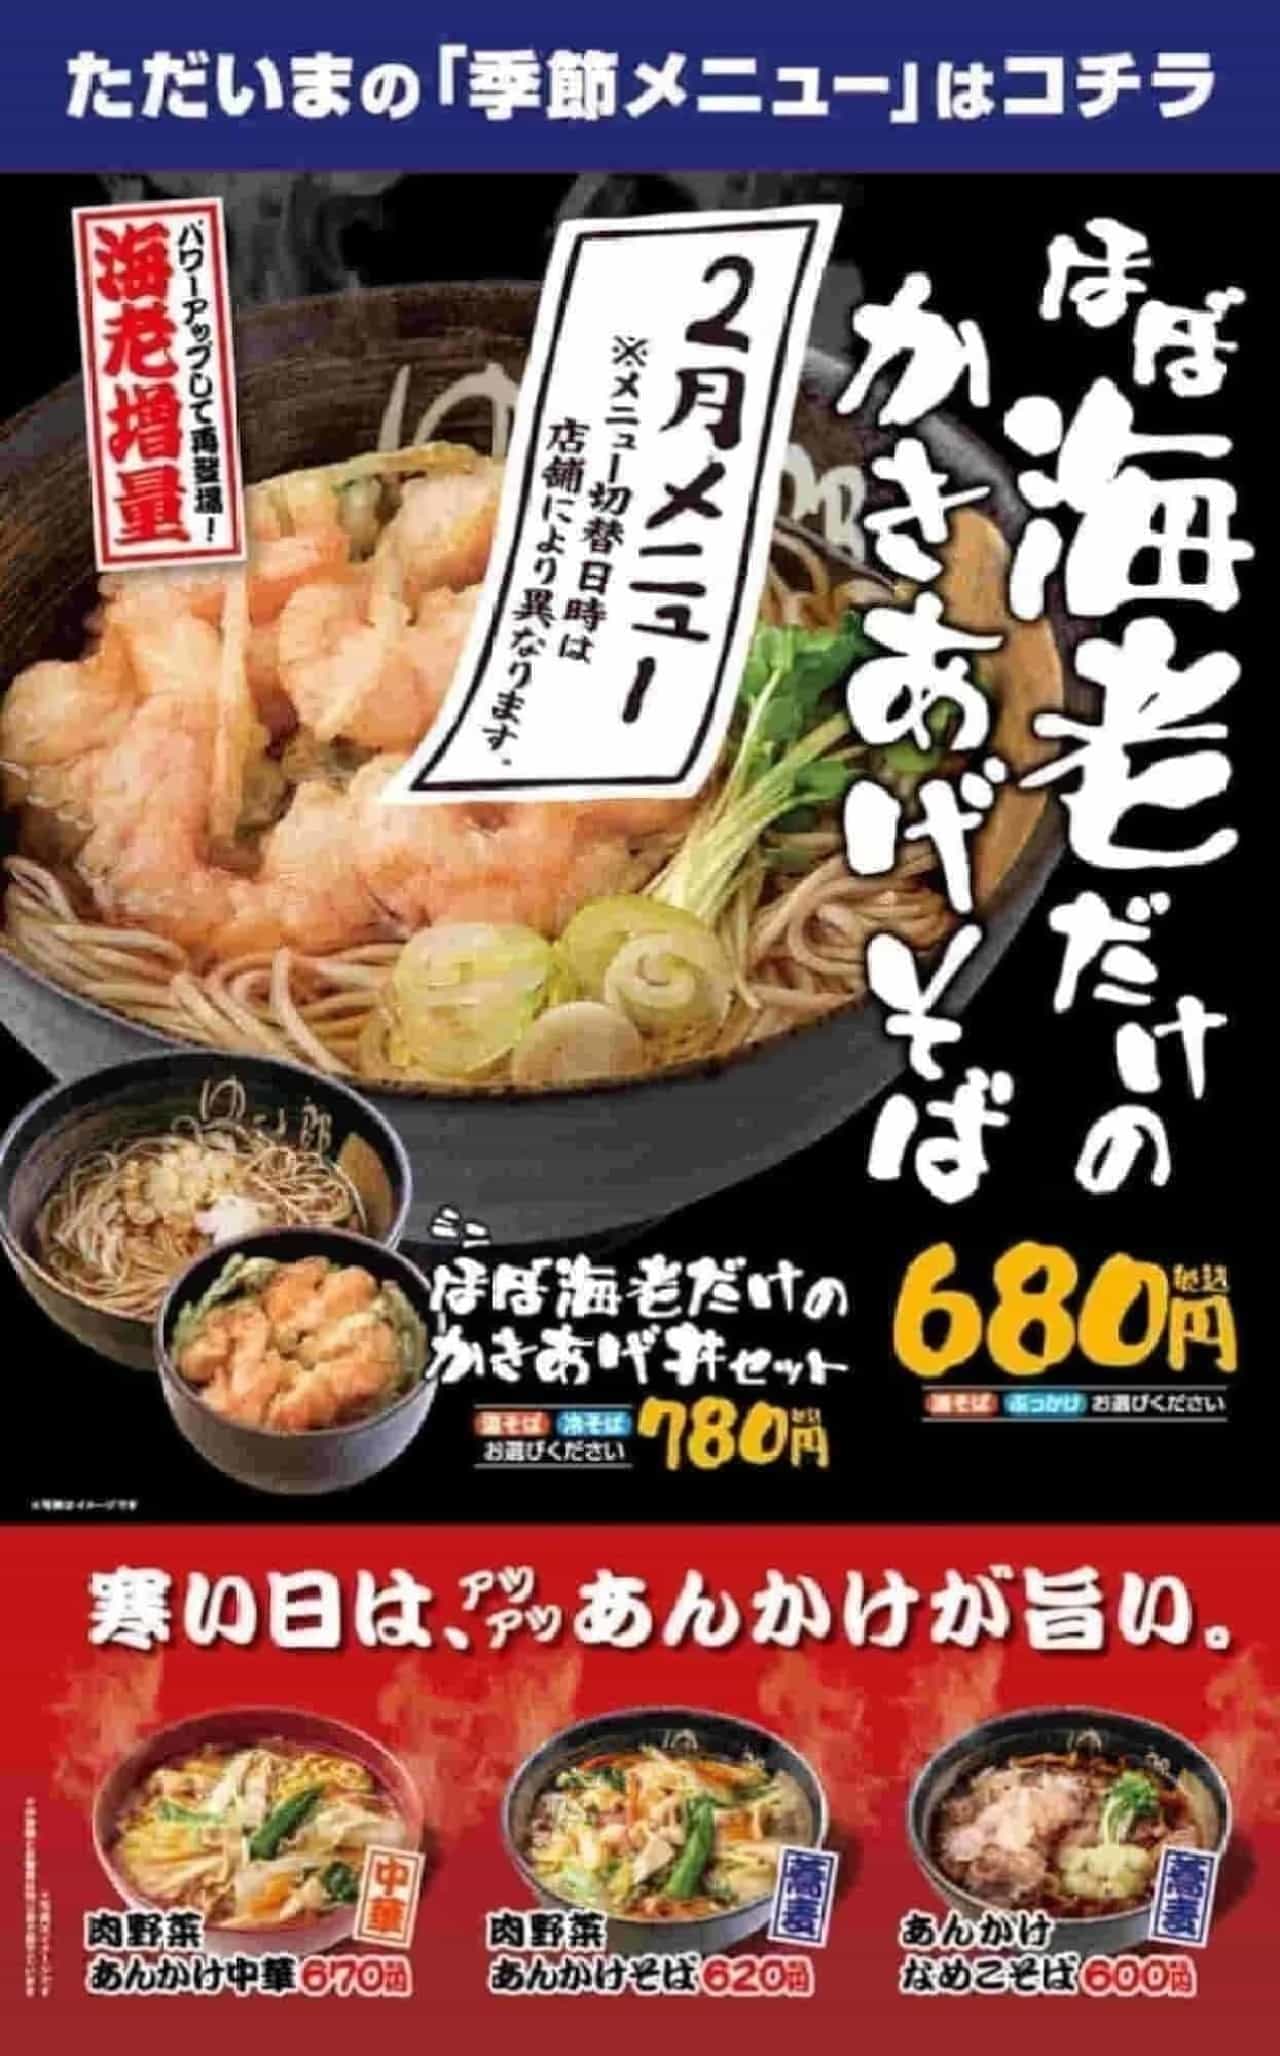 YUDETARO "Almost only prawns" and "Ankake" menu